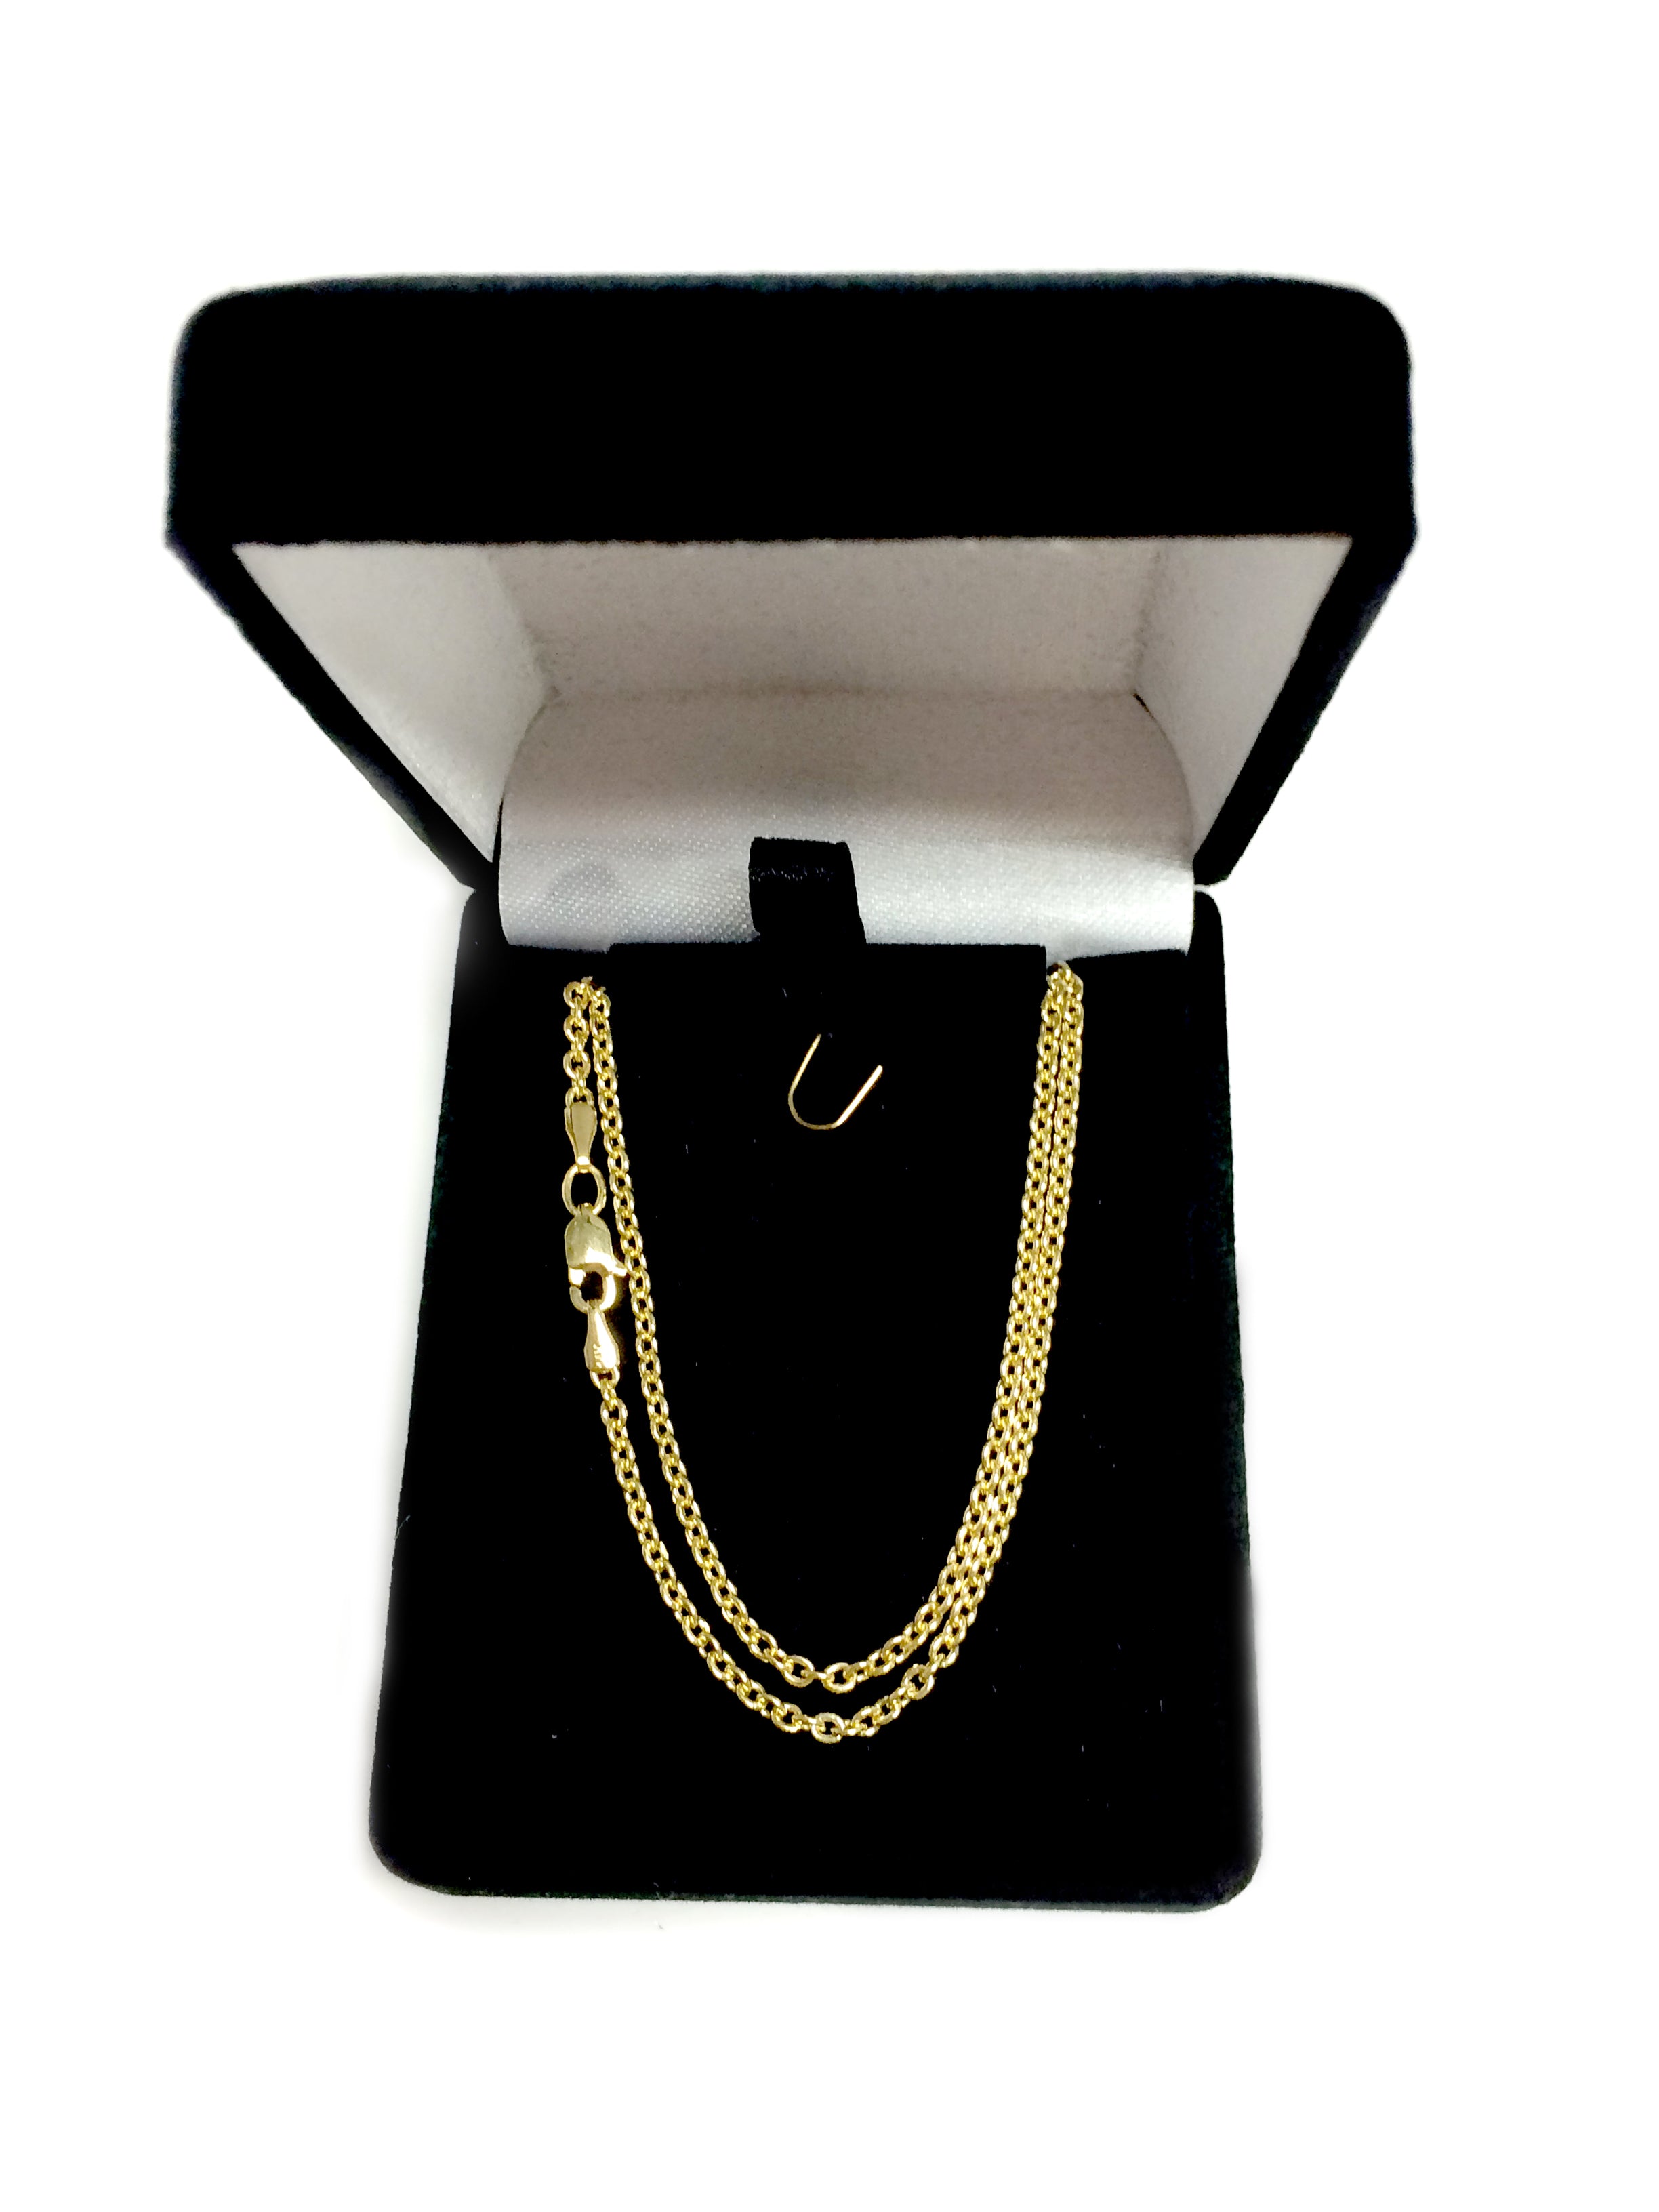 Collar de cadena Forsantina de oro amarillo de 14 k, joyería fina de diseño de 2,3 mm para hombres y mujeres